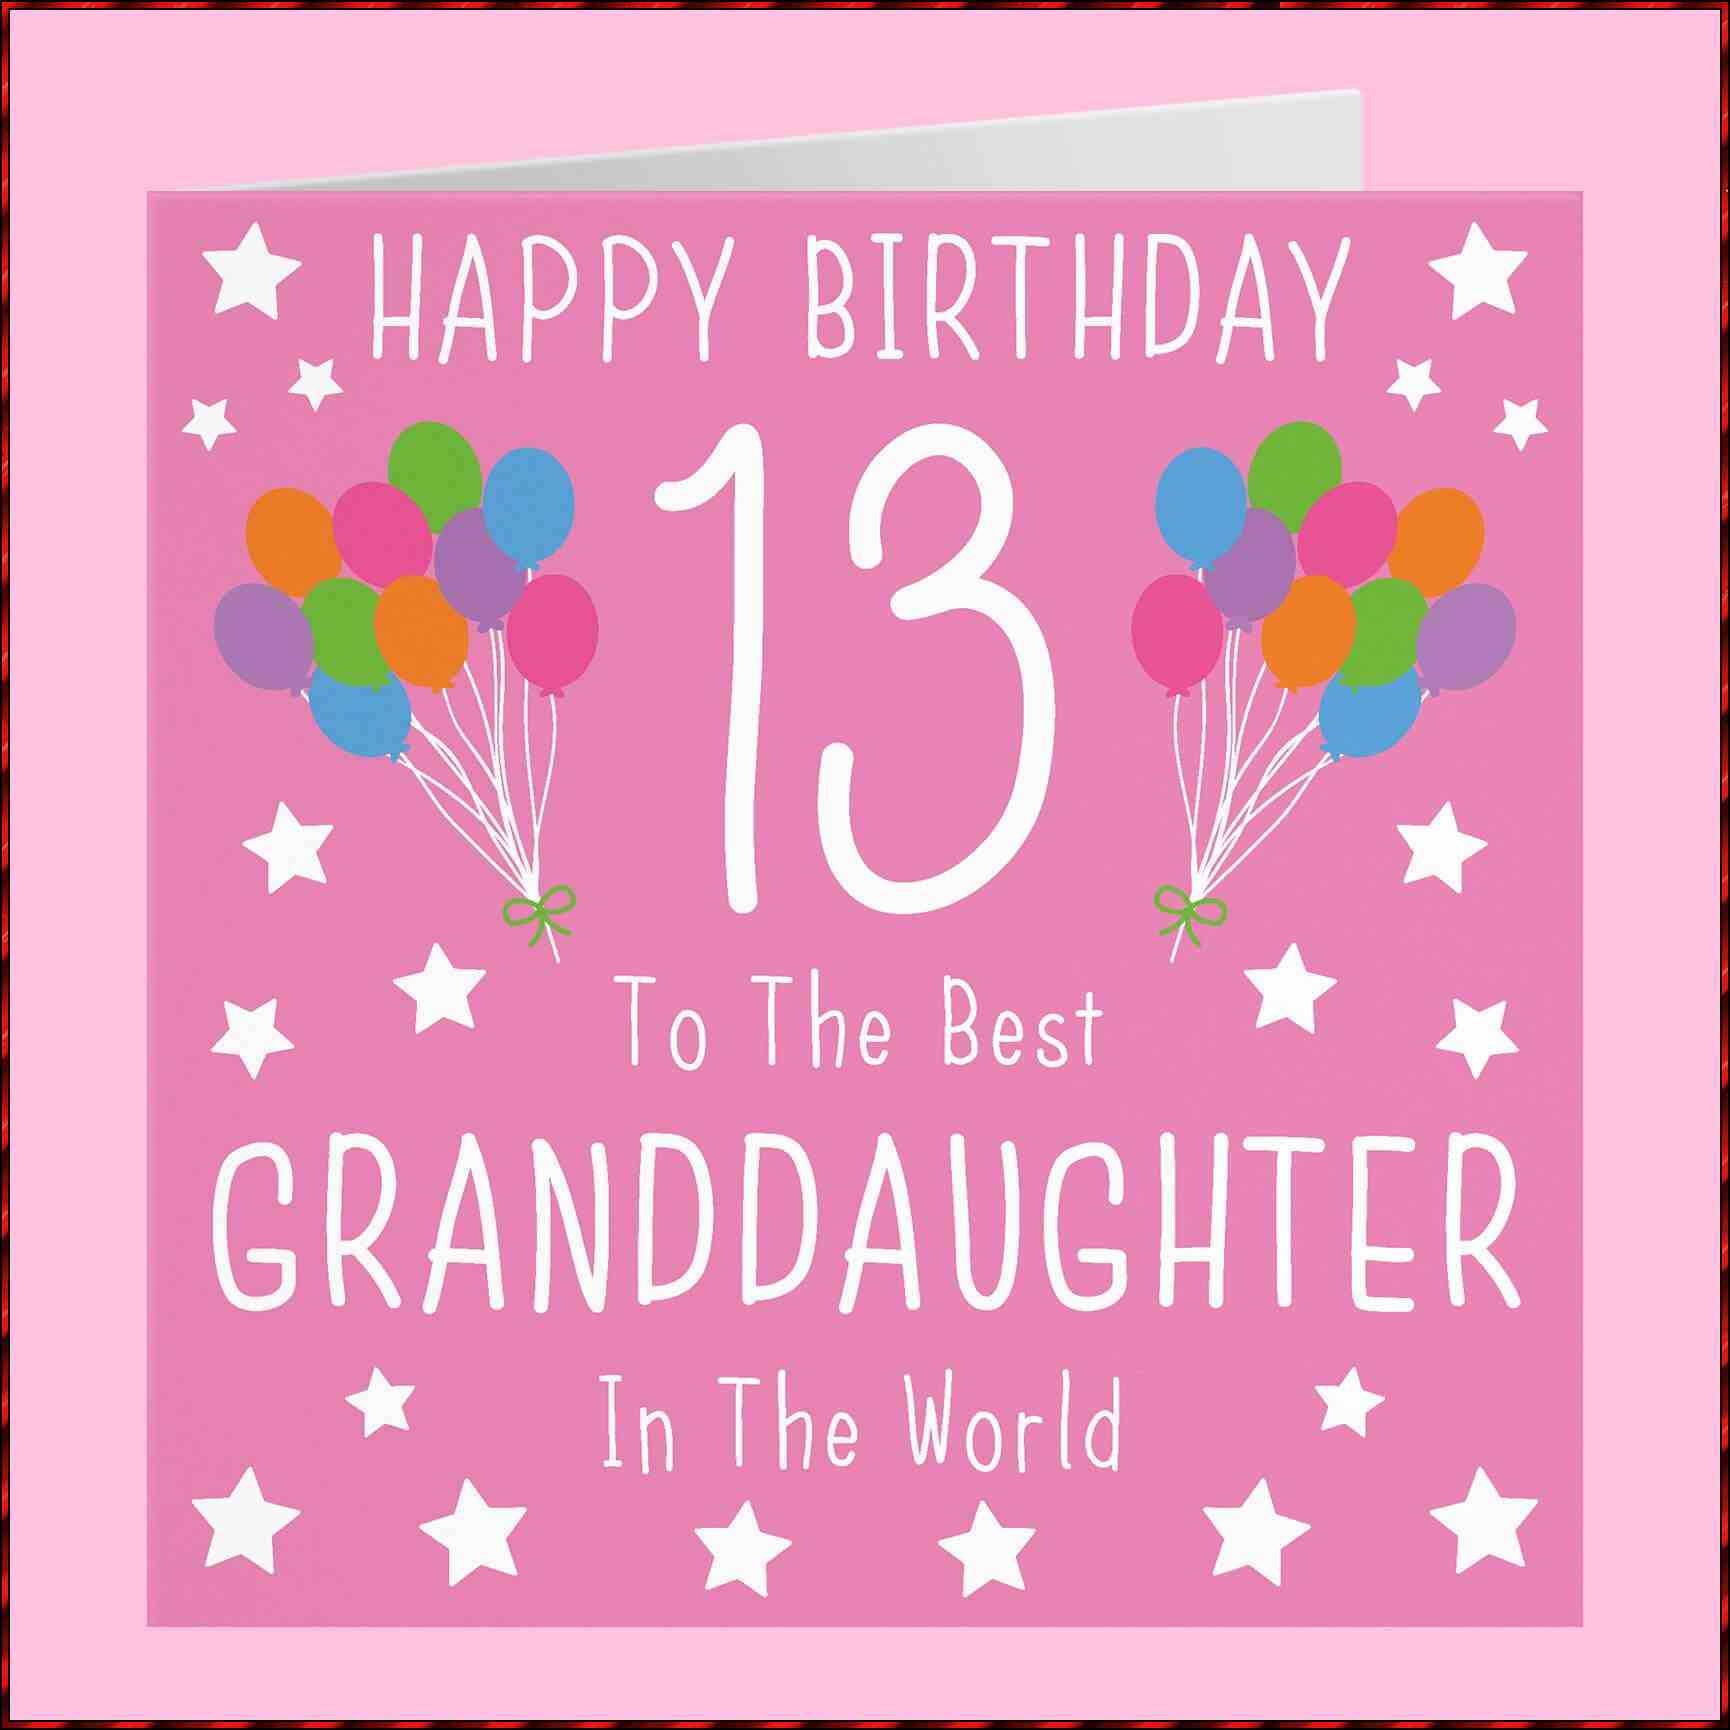 happy 13th birthday granddaughter

